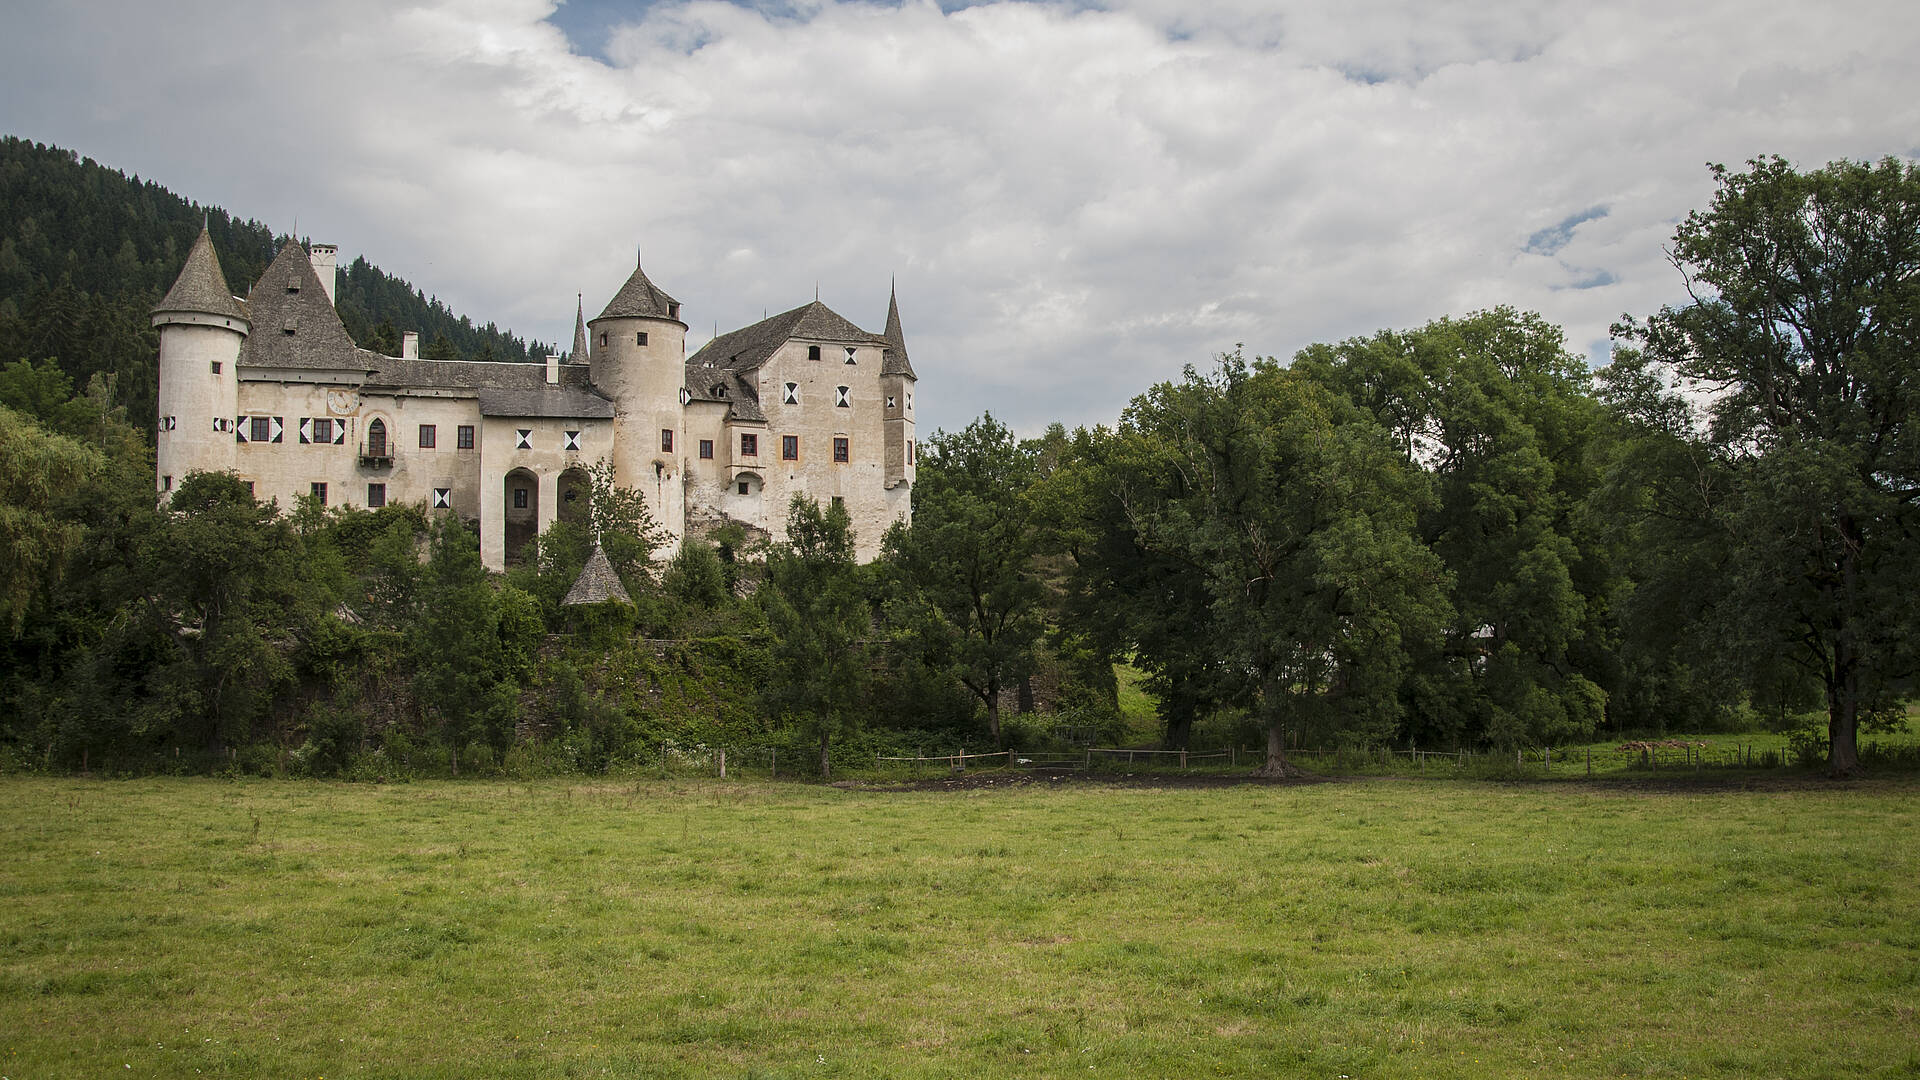 Burg Frauenstein in Mittelkärnten